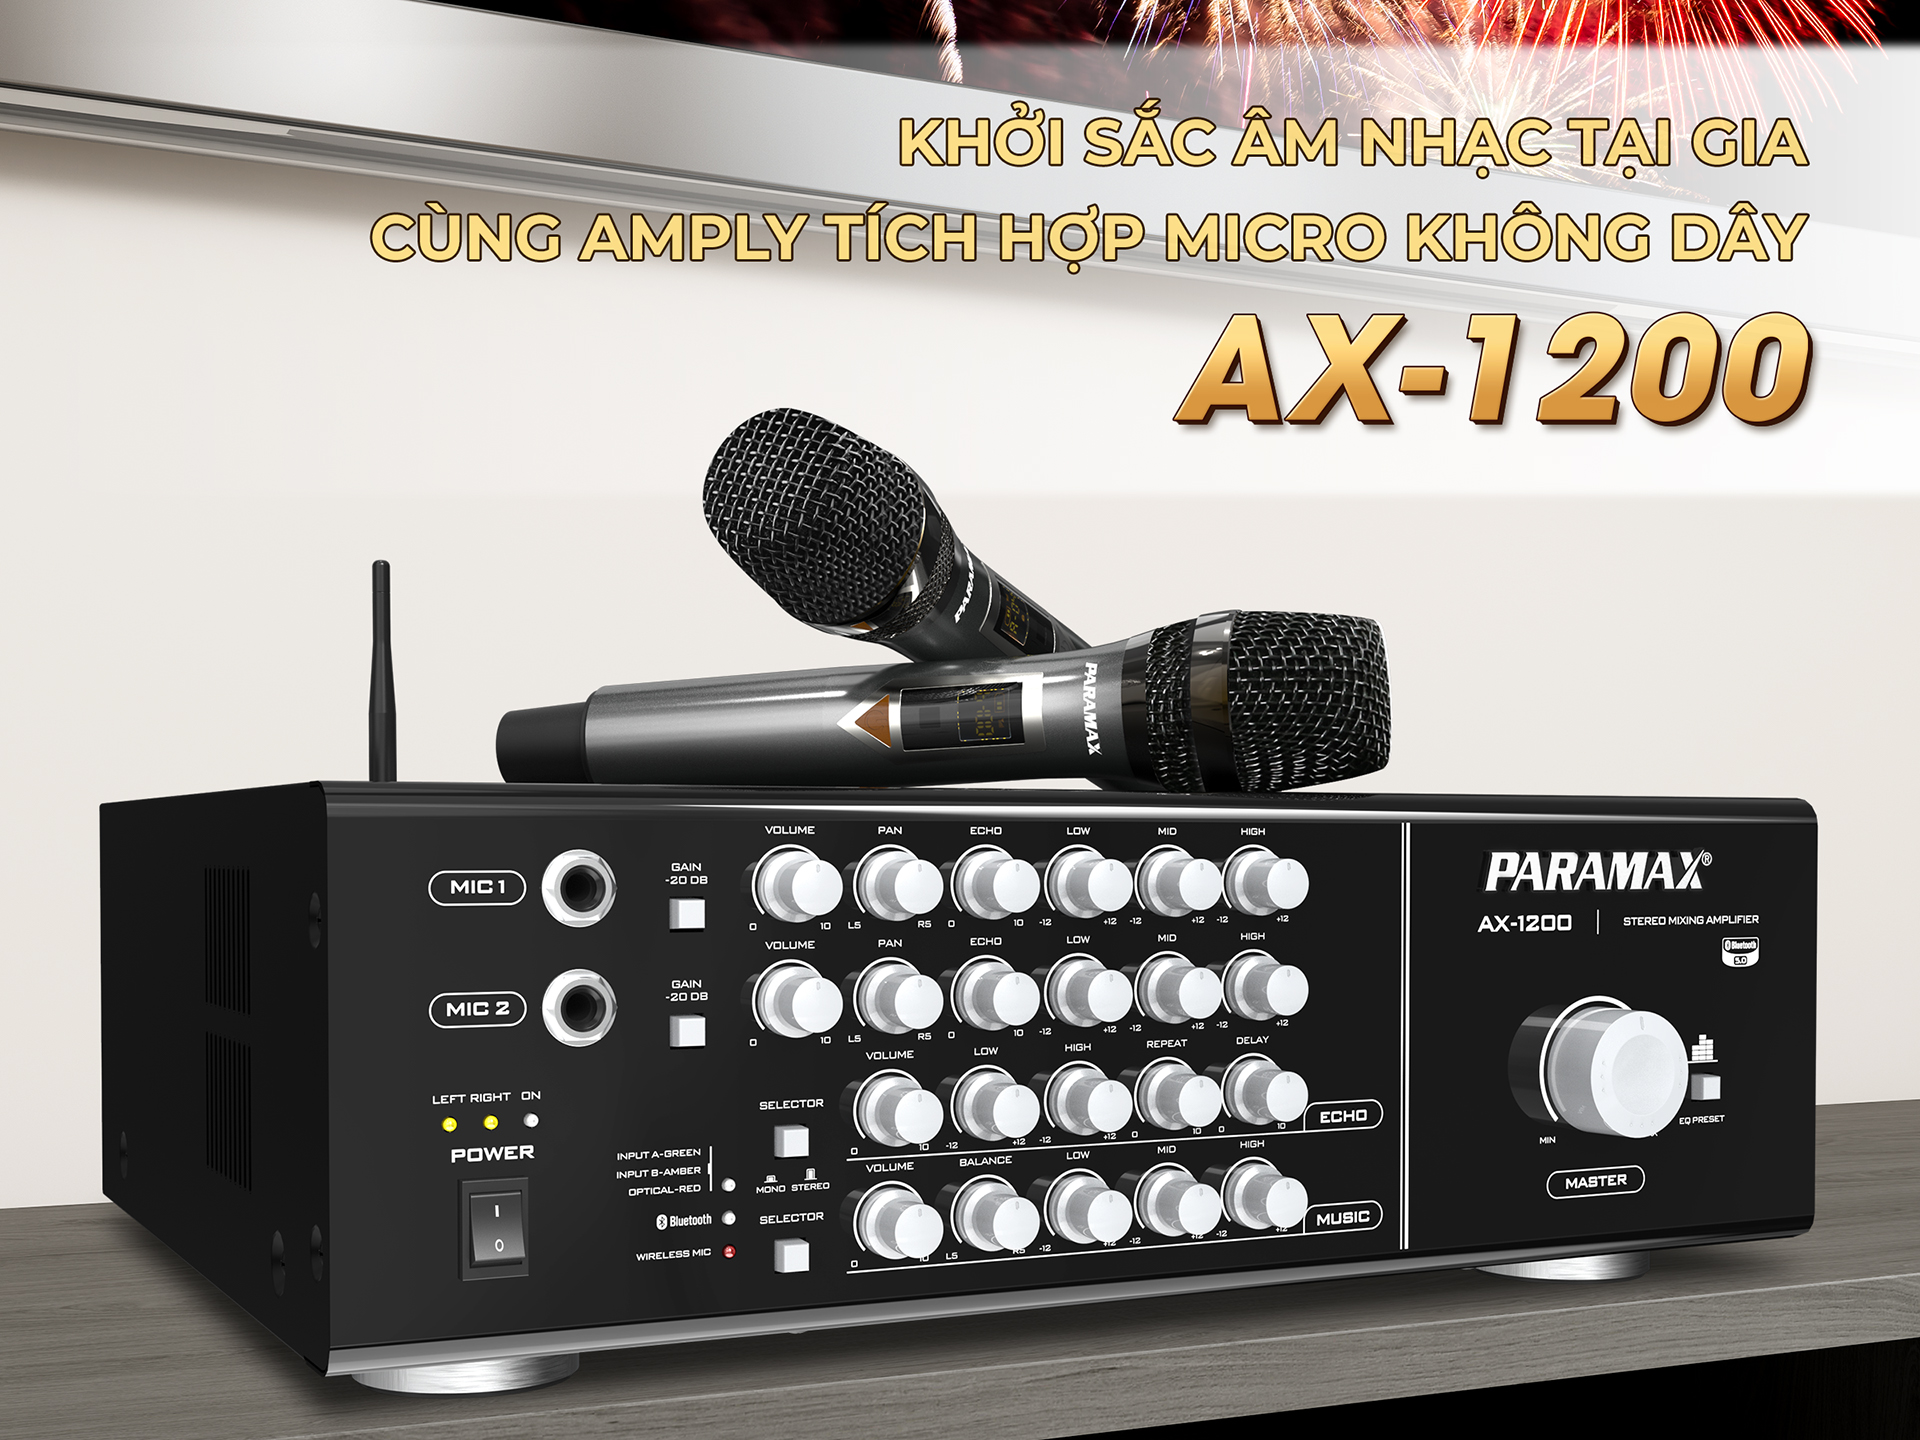 Paramax AX-1200 đang được bán trên thị trường với mức giá khoảng 10 triệu đồng